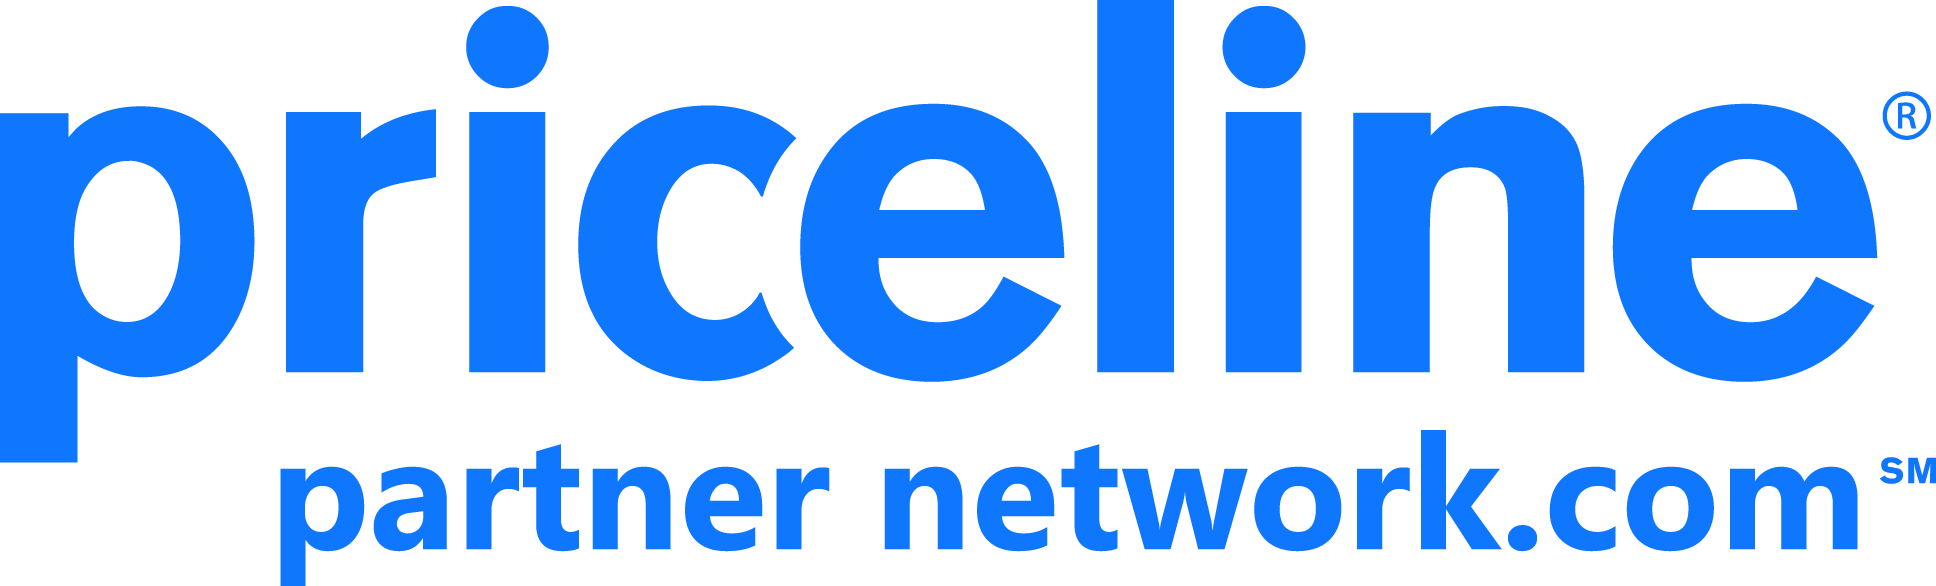 Priceline Partner Network Logo